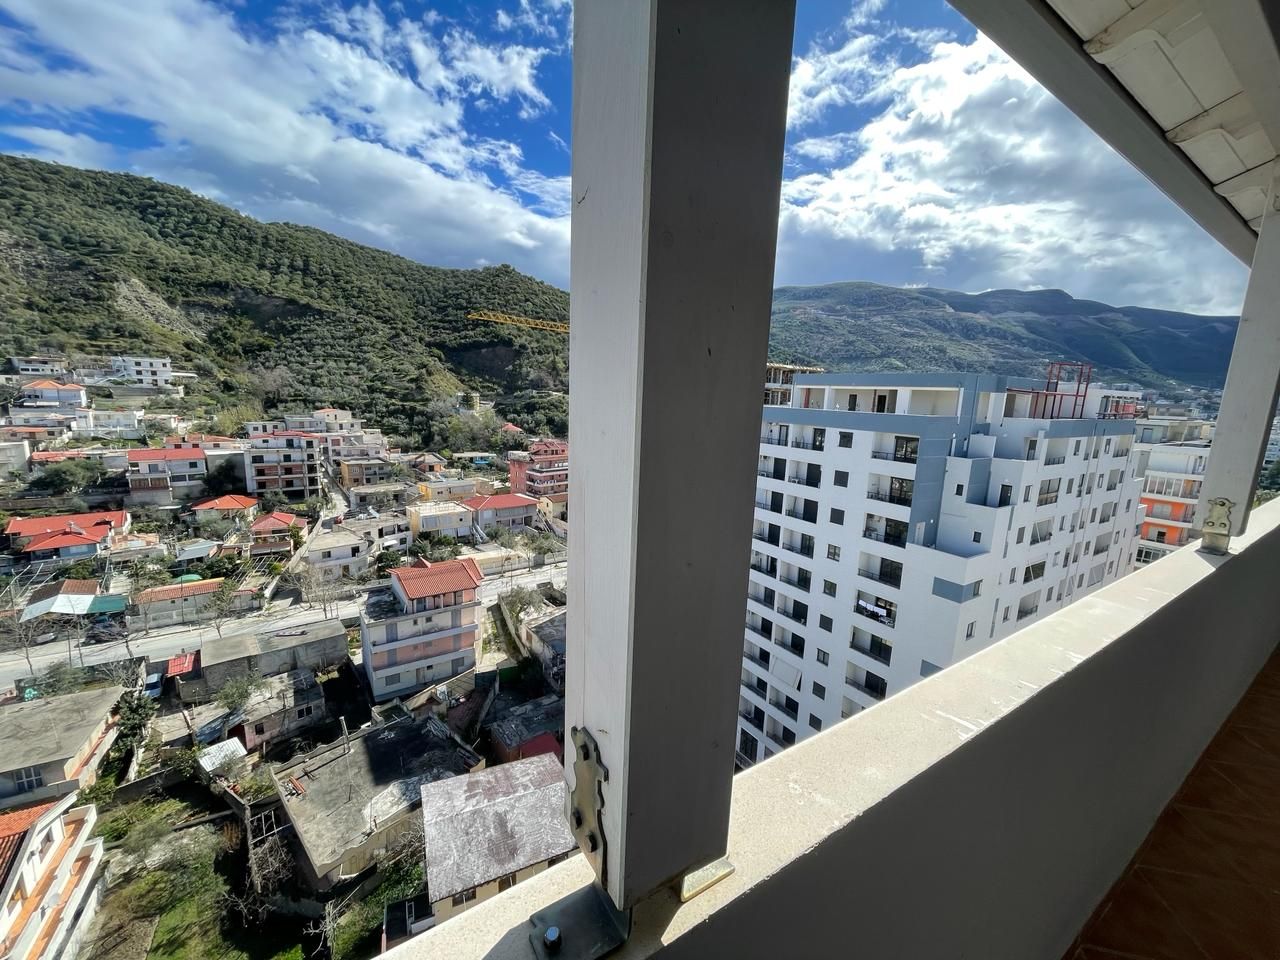 Mieszkanie Na Sprzedaż W Wlorze W Albanii